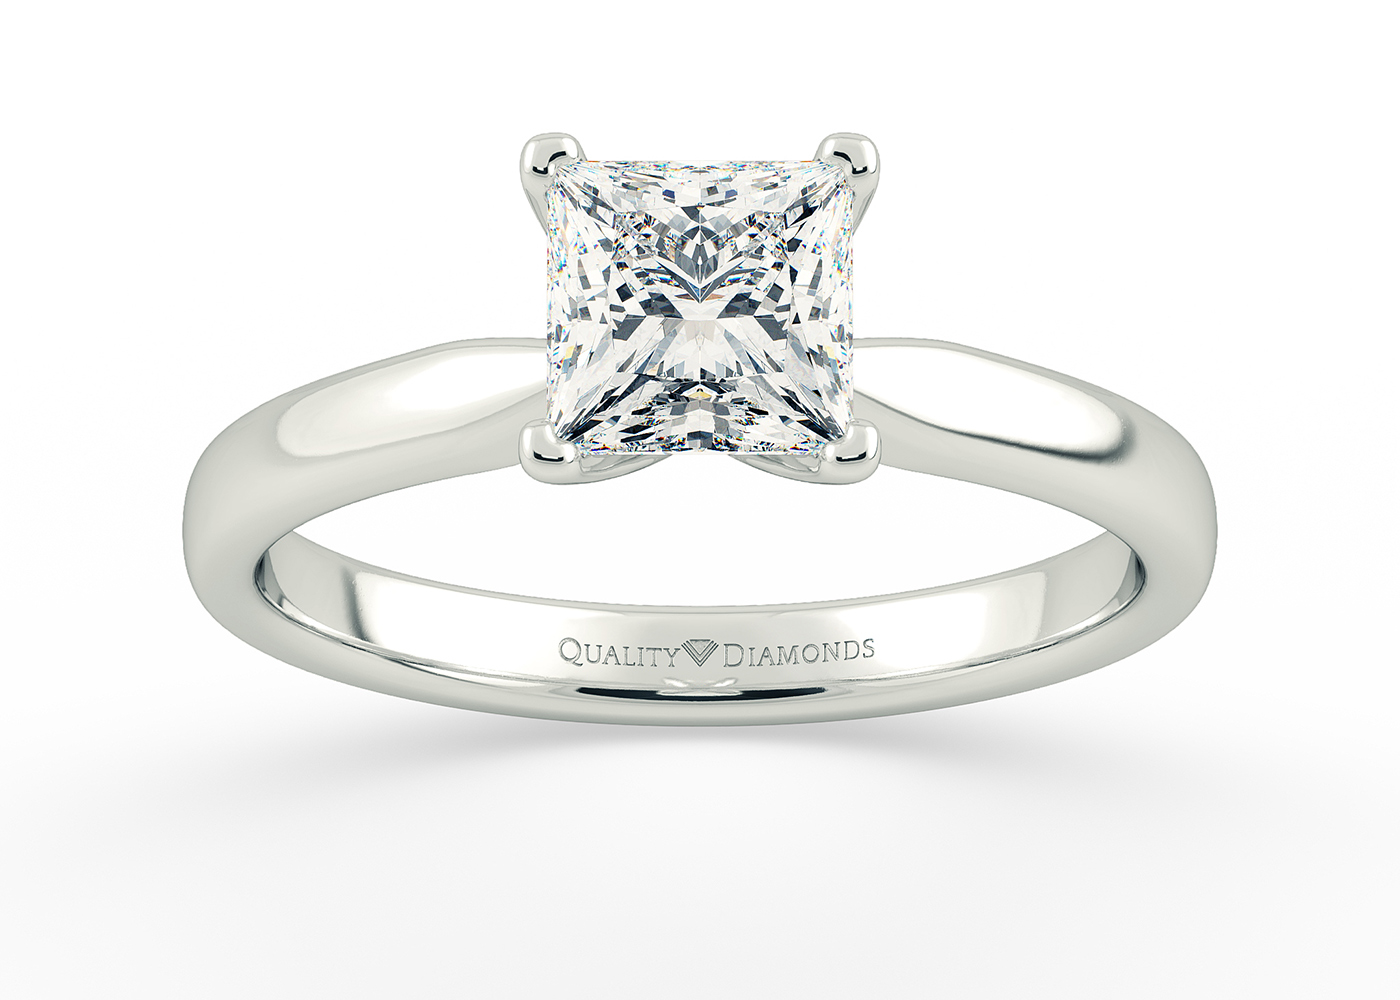 Princess Amia Diamond Ring in Platinum